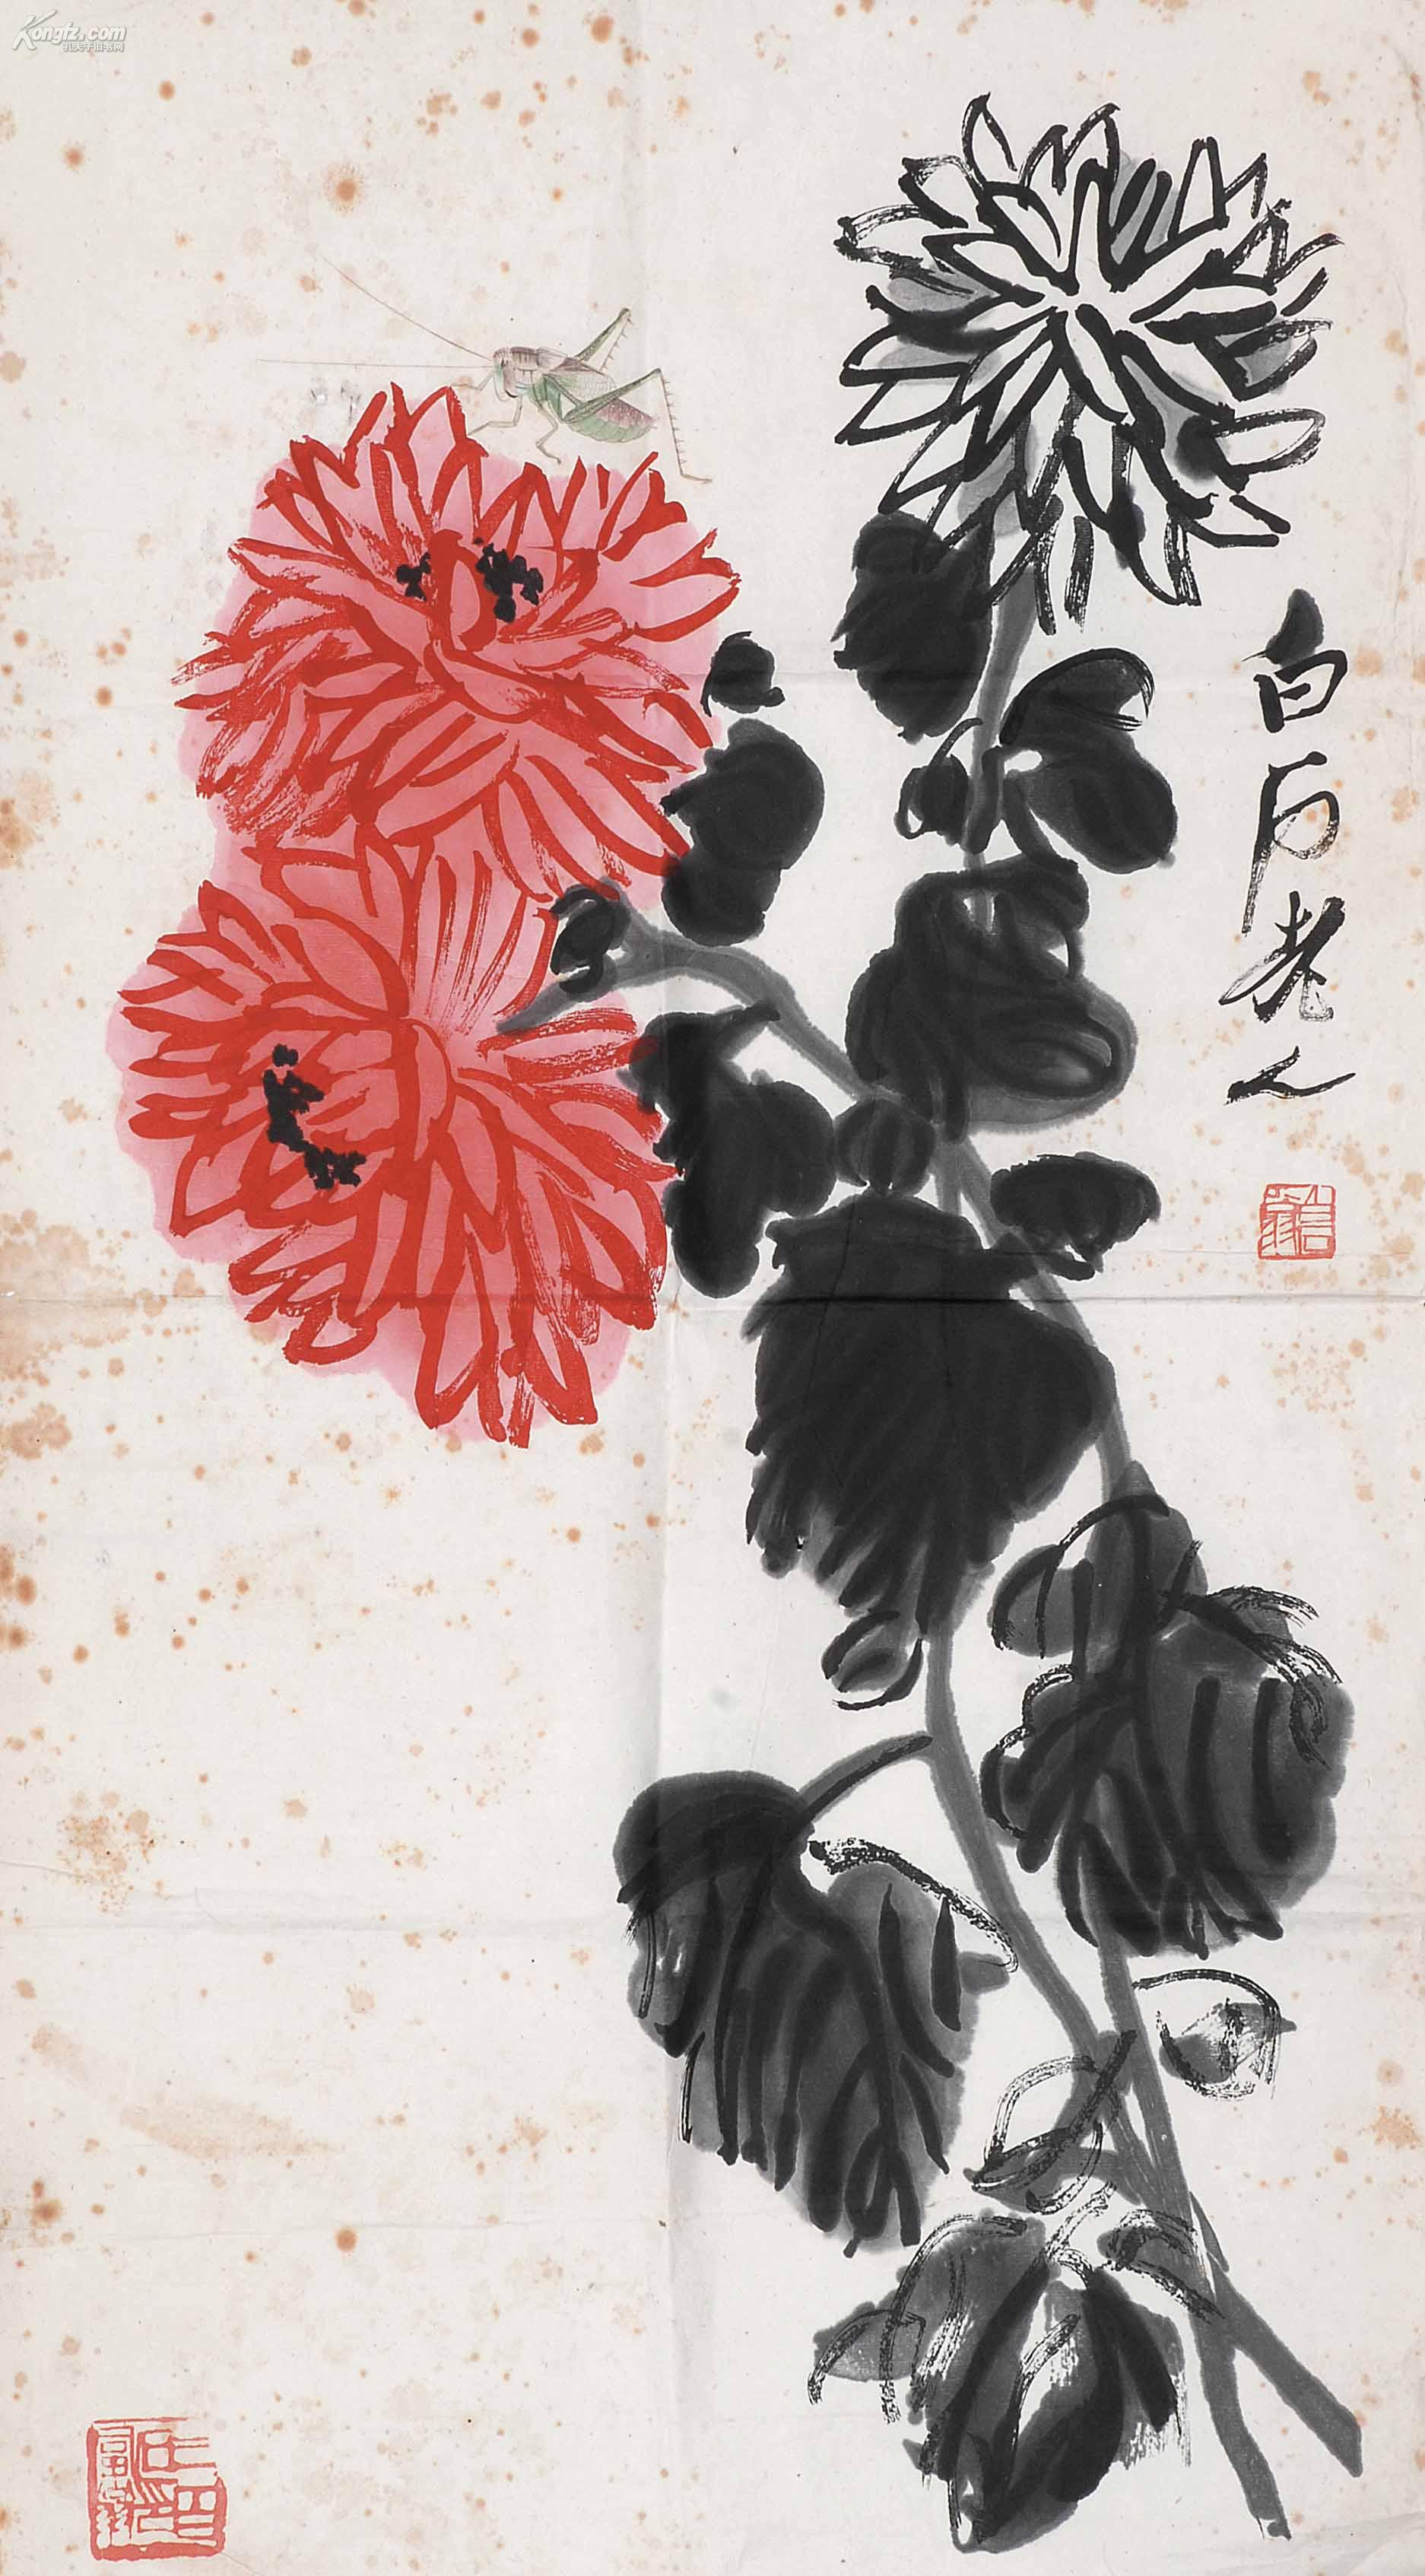 齐白石的菊花作品欣赏图片